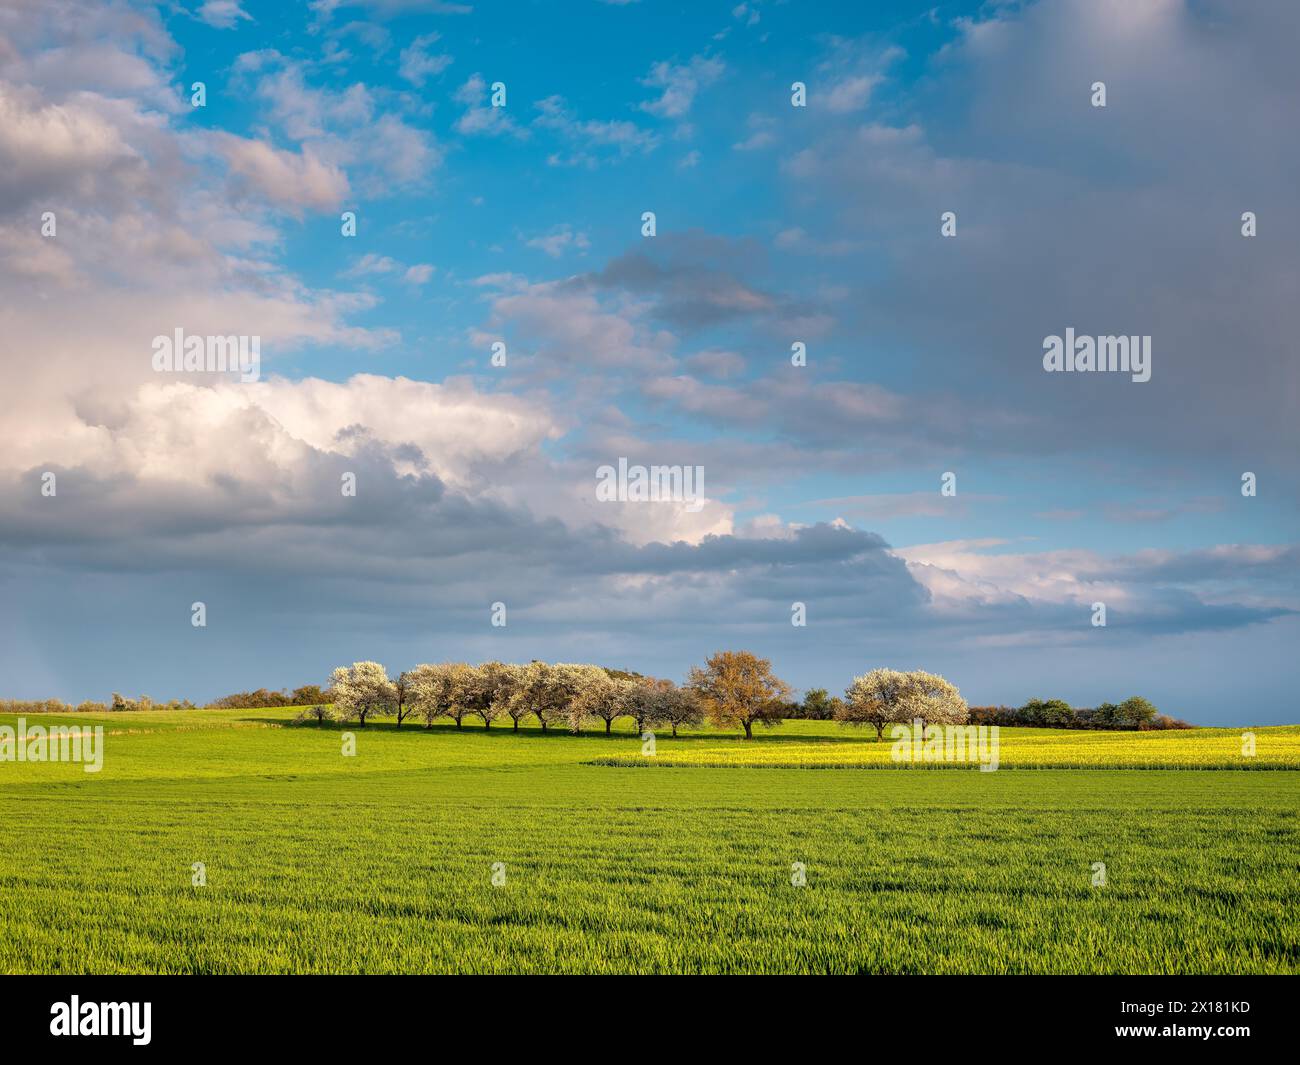 Paesaggio soleggiato con campi verdi lussureggianti, alberi e cieli nuvolosi, Assia, Germania Foto Stock